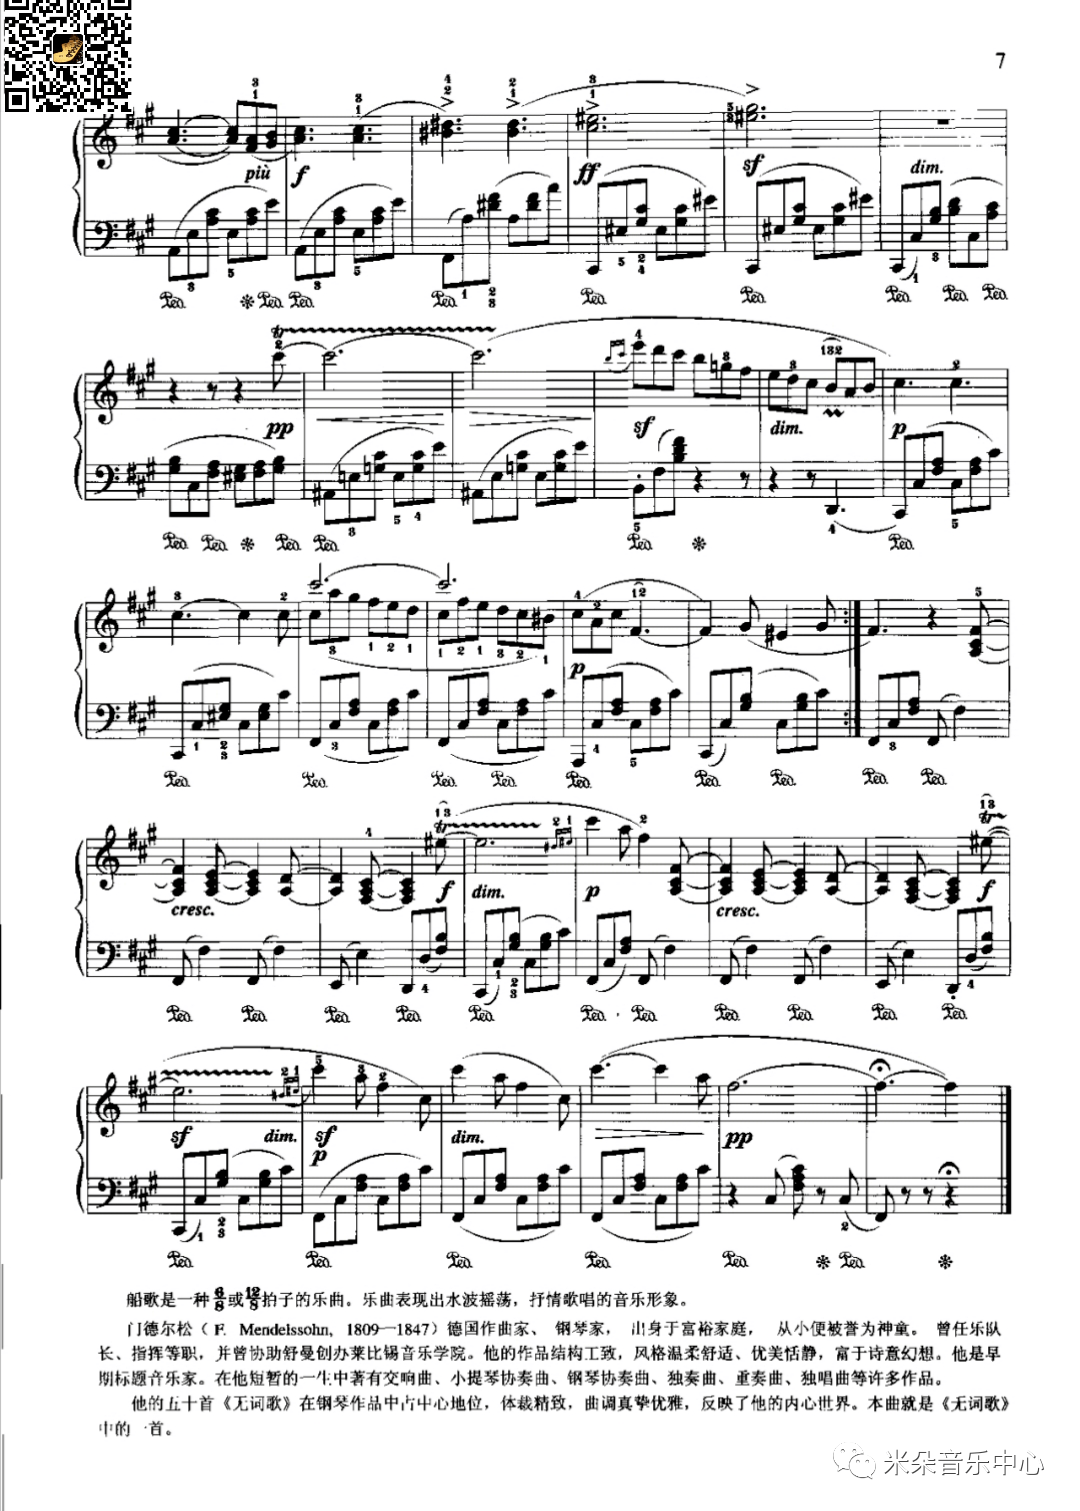 威尼斯船歌op30no6门德尔松钢琴乐谱分享